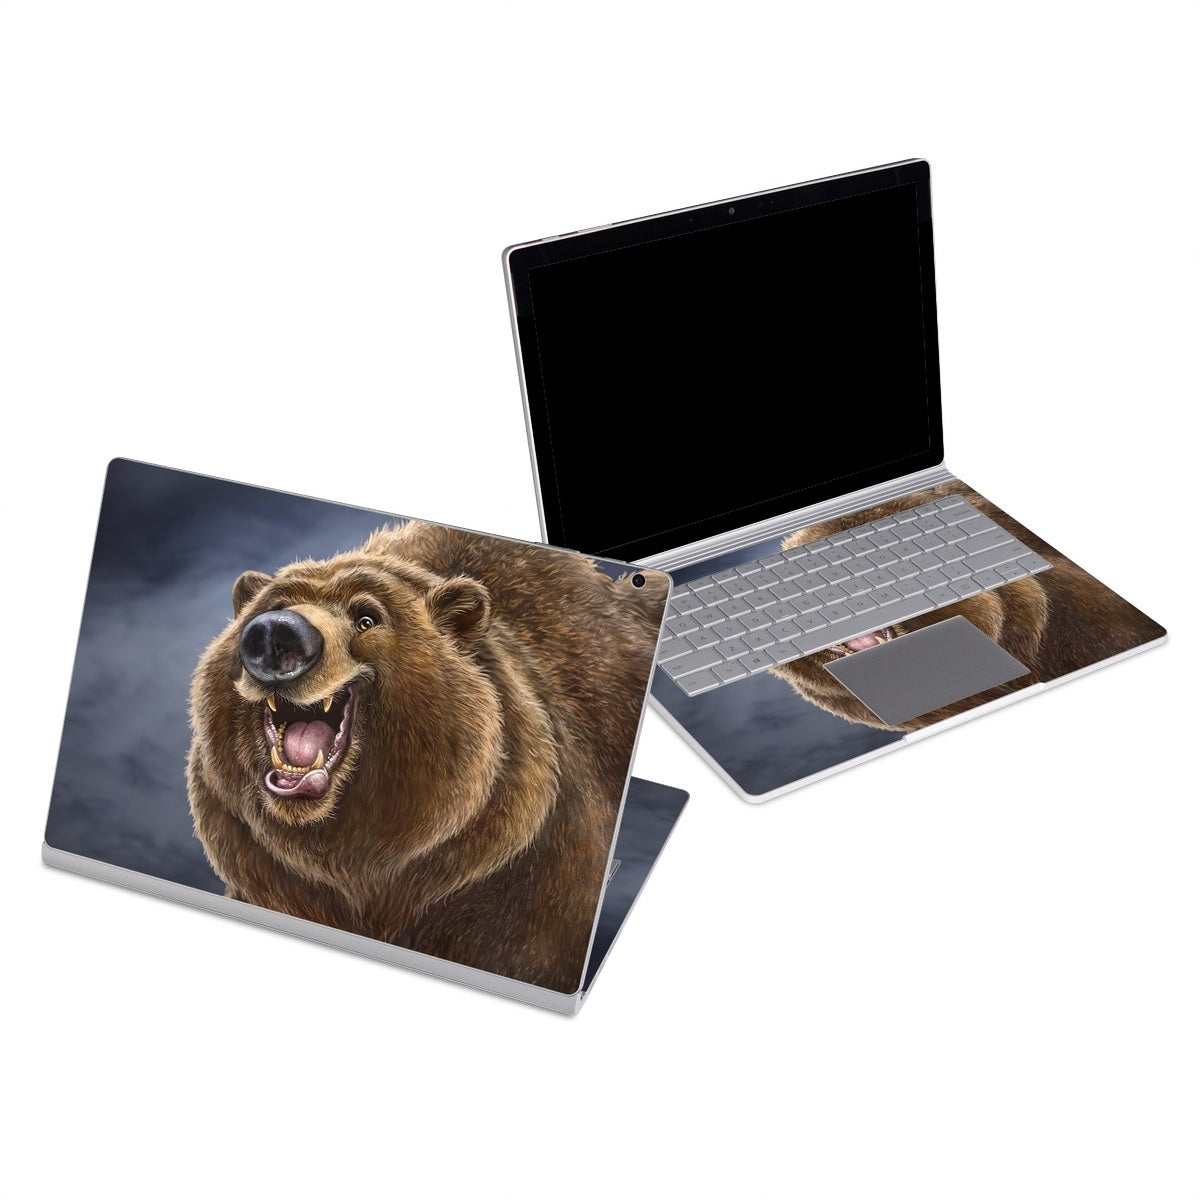 Hey Bear - Microsoft Surface Book Skin